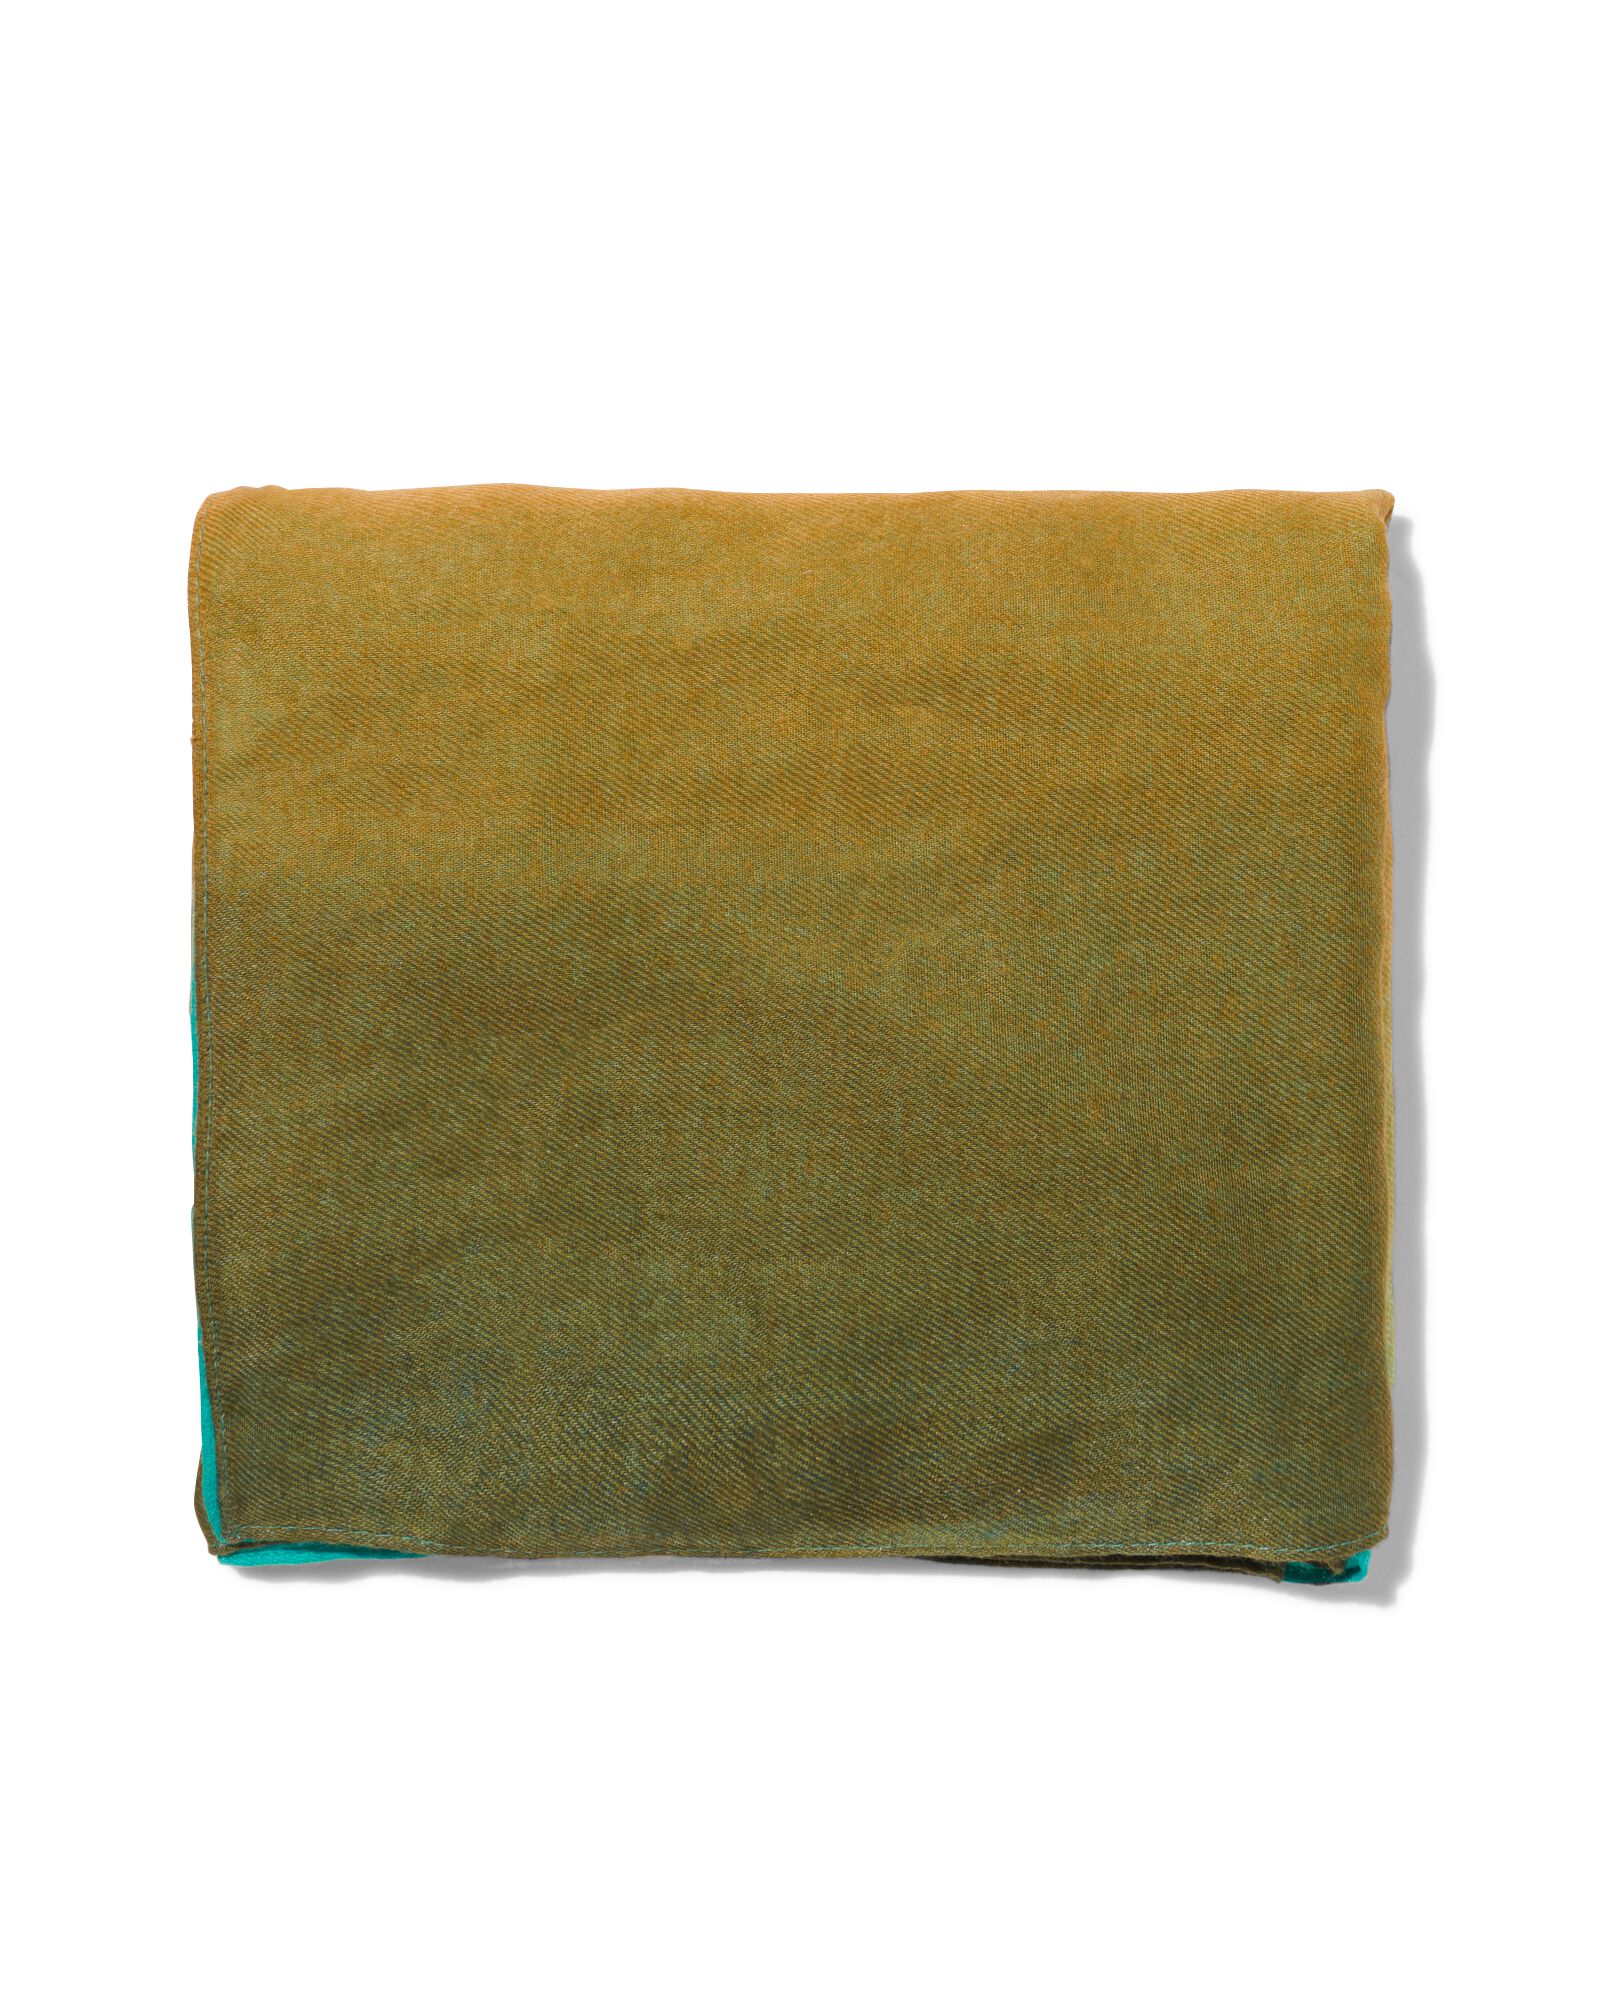 Damen-Schal mit Farbverlauf, 200 x 80 cm - 1730018 - HEMA